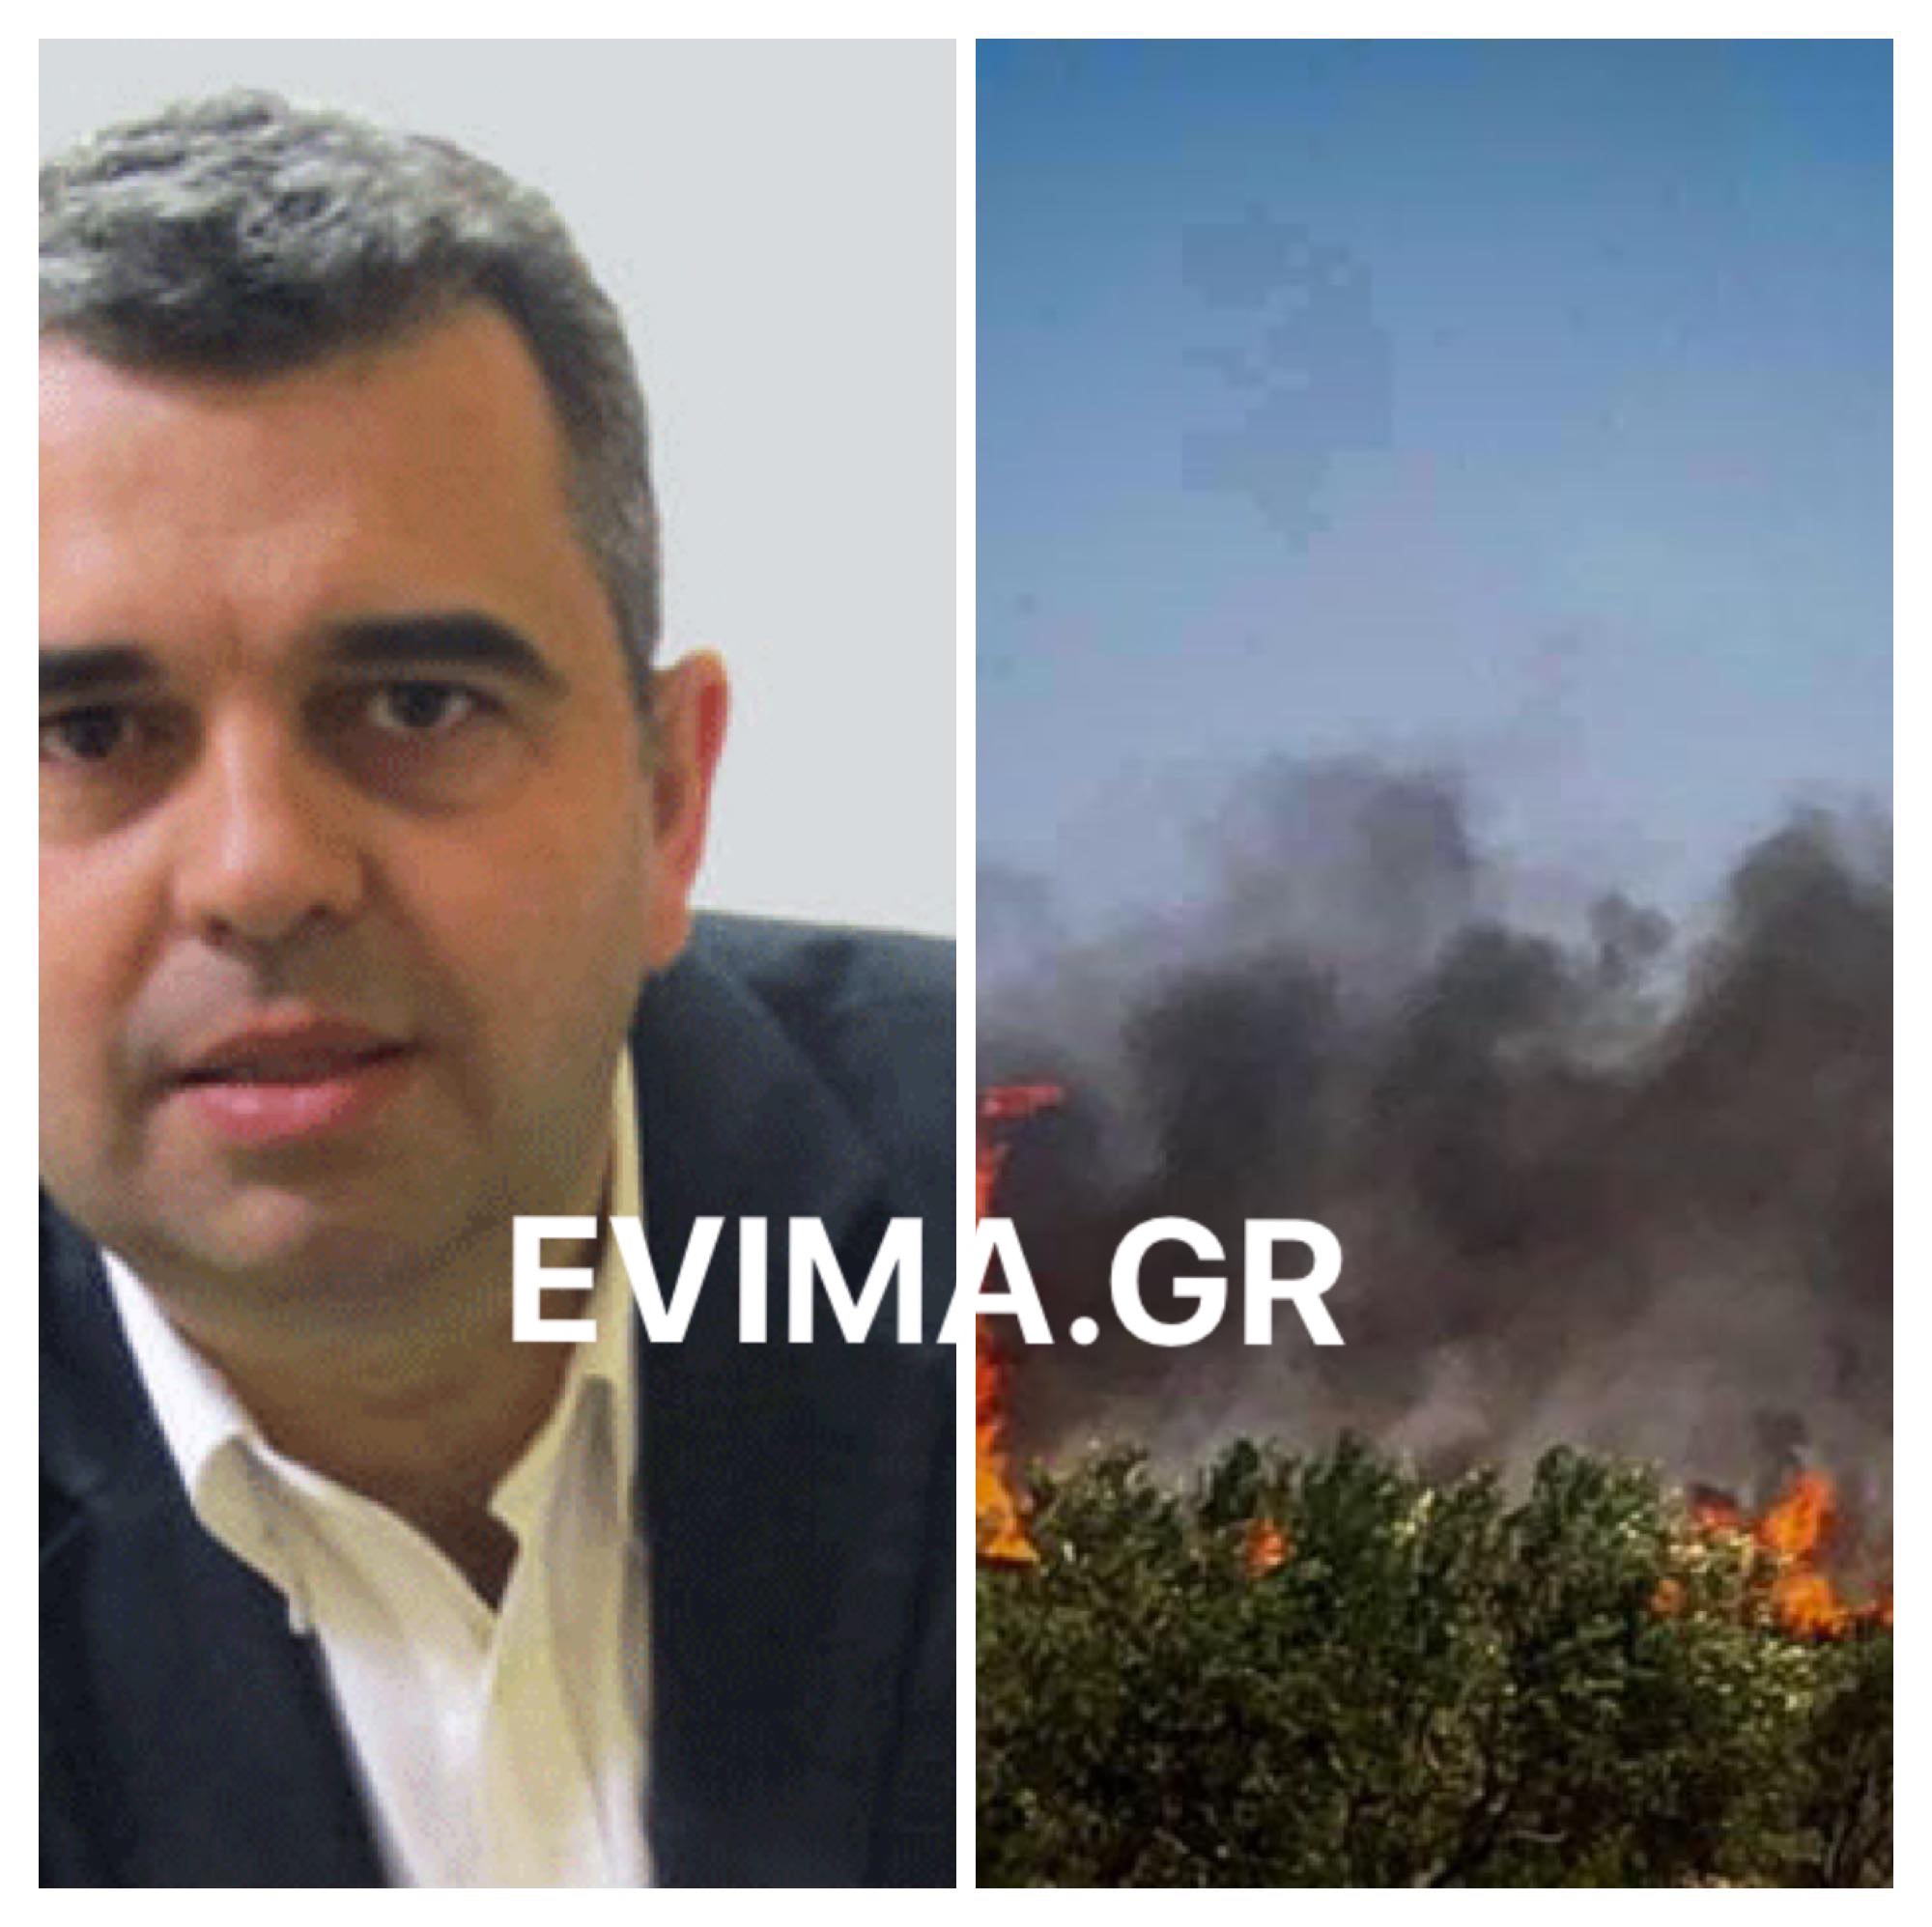 Νεότερη δήλωση Ραβιόλου στο evima: Το μεγαλύτερο μέρος της φωτιάς έχει περιοριστεί